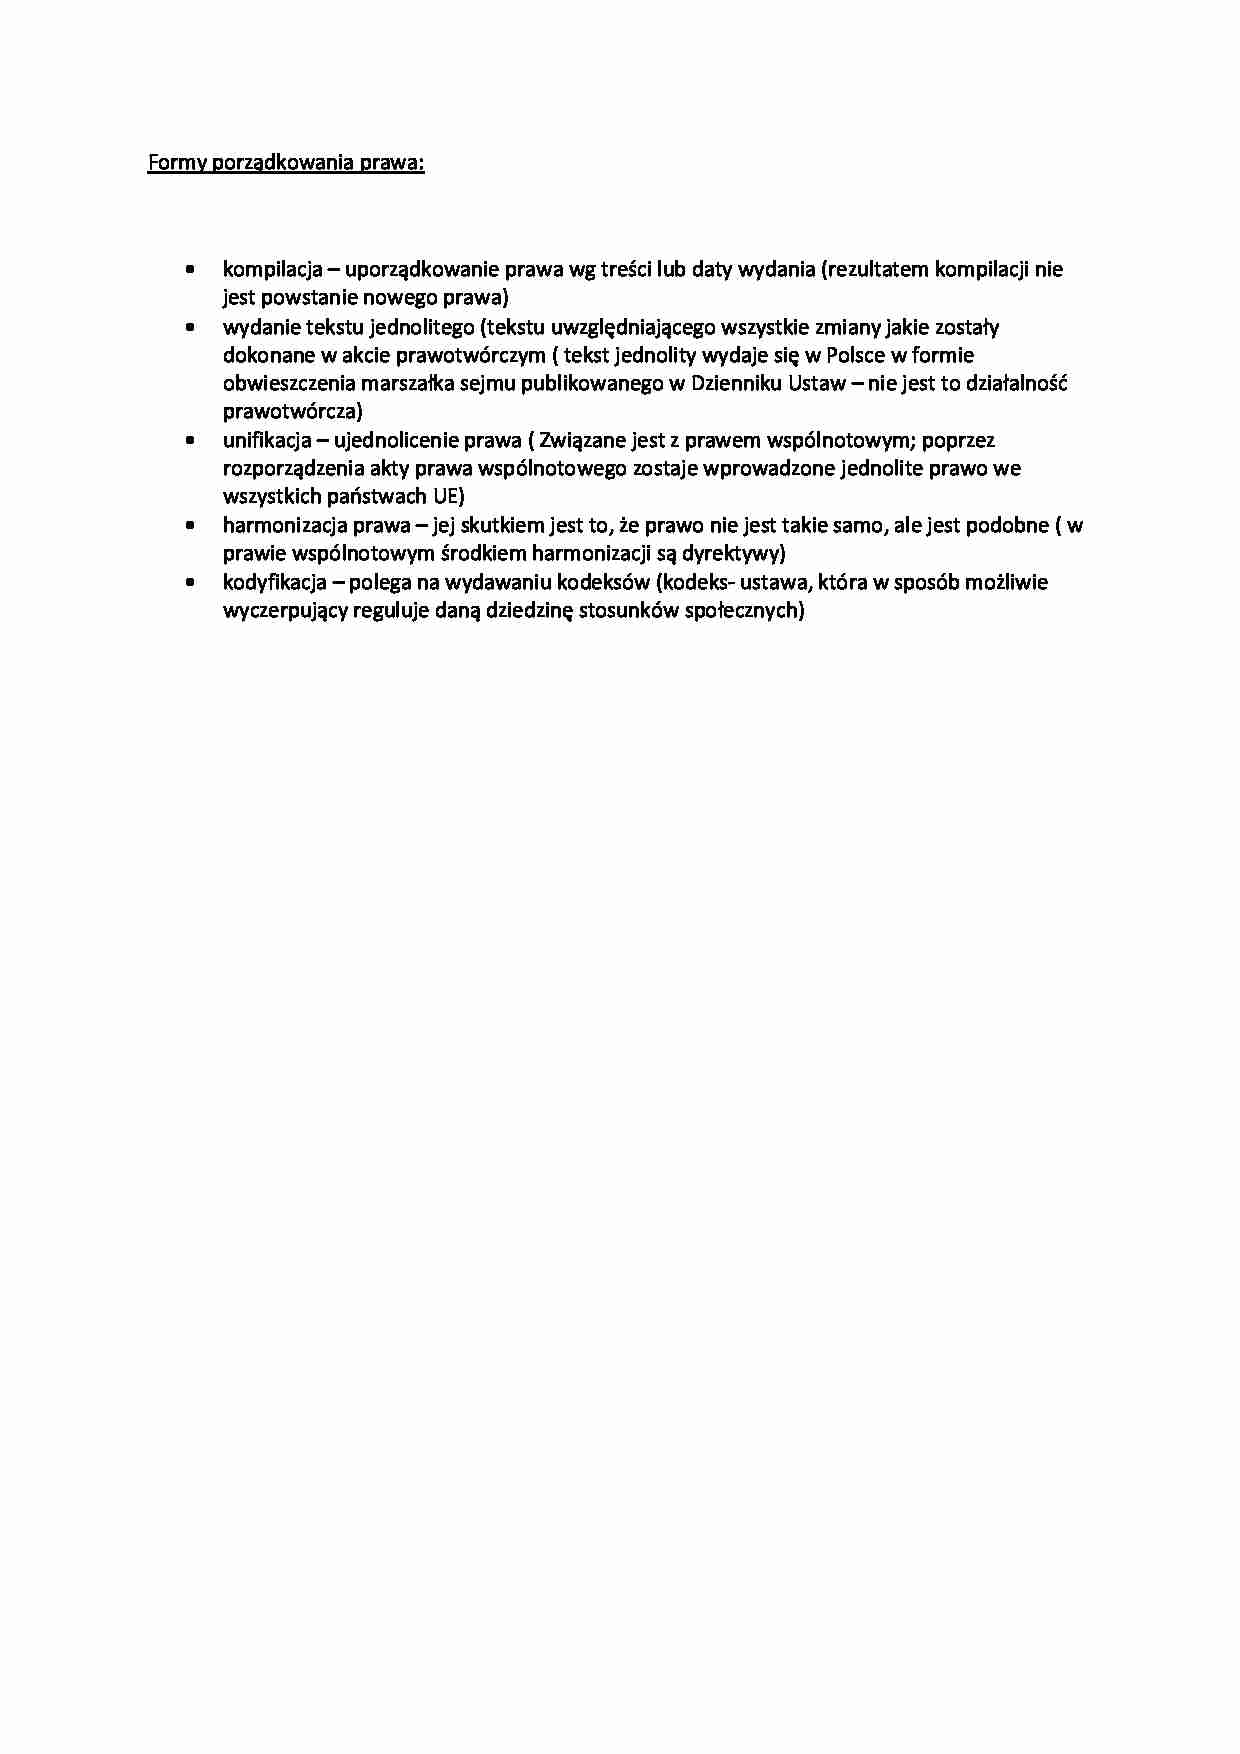 Formy porządkowania prawa - omówienie - strona 1